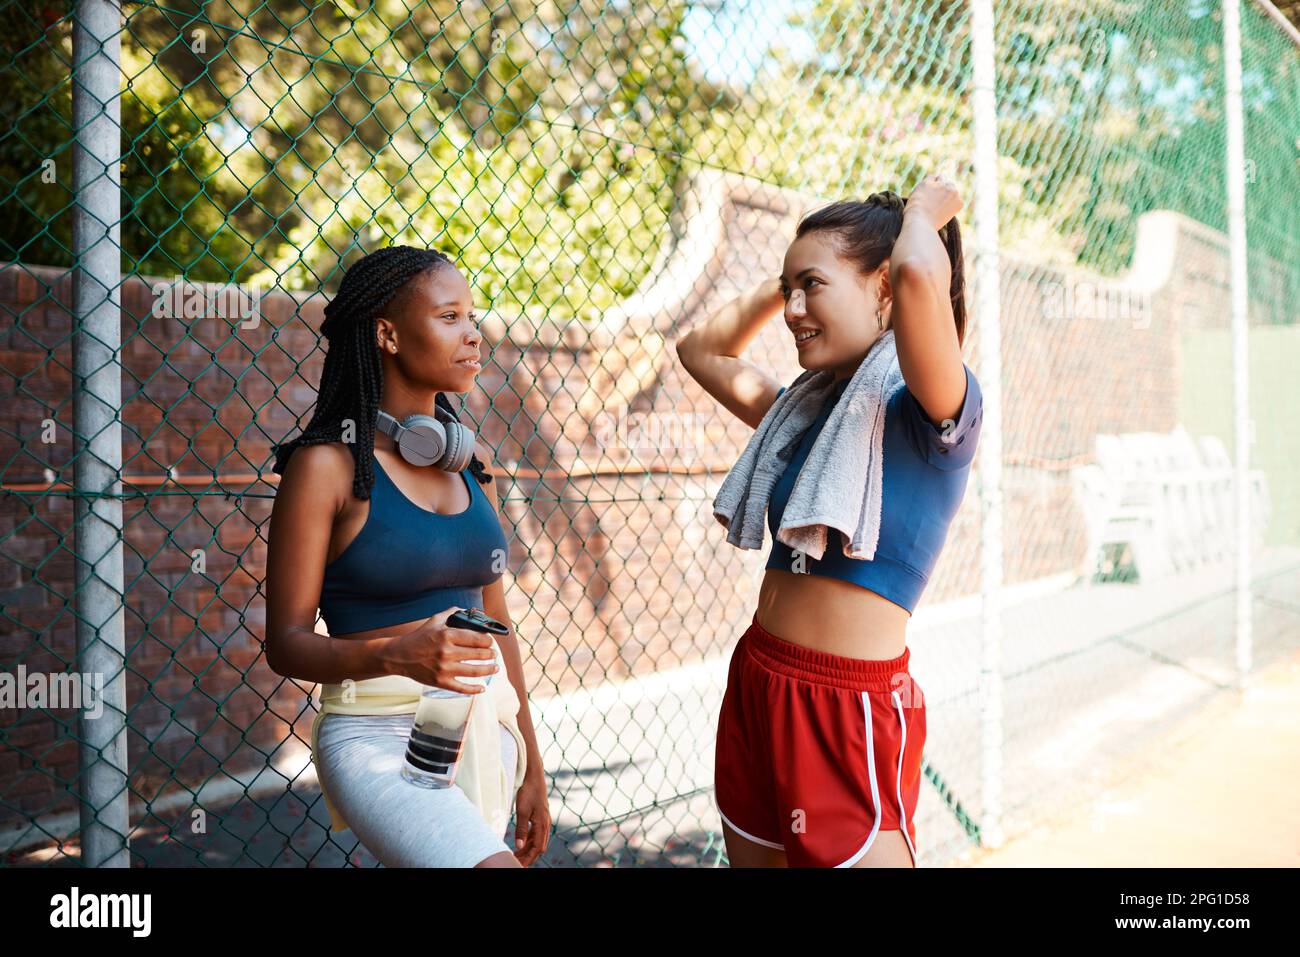 IM pronto per la prossima sessione. due giovani donne sportive che chiacchierano tra loro contro una recinzione all'aperto. Foto Stock